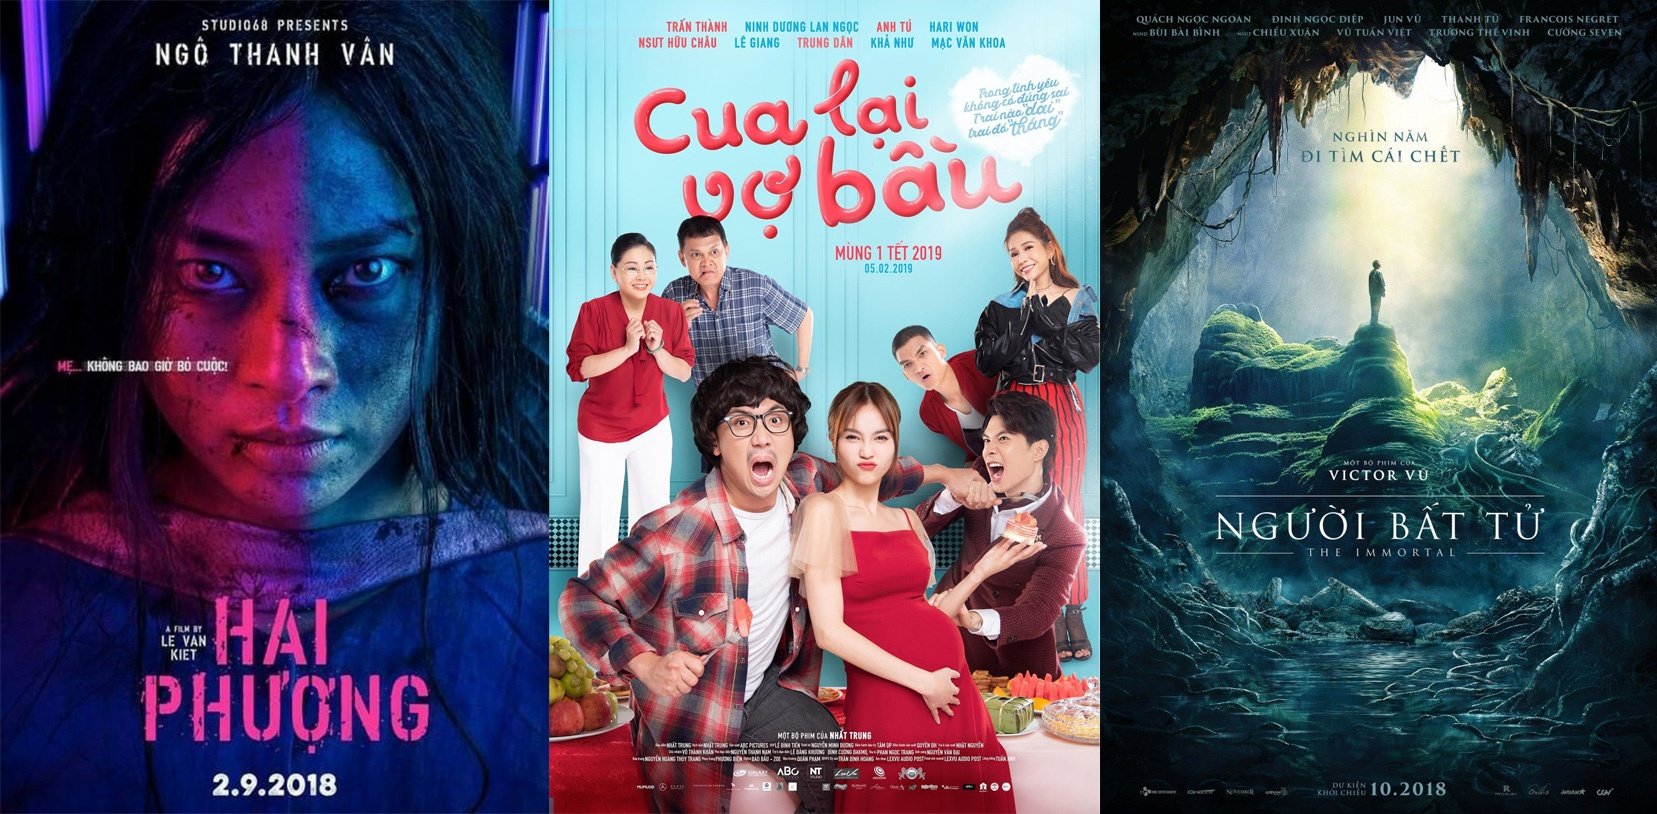 20 bộ phim chiếu rạp Việt Nam mới và hot nhất hiện nay - BlogAnChoi